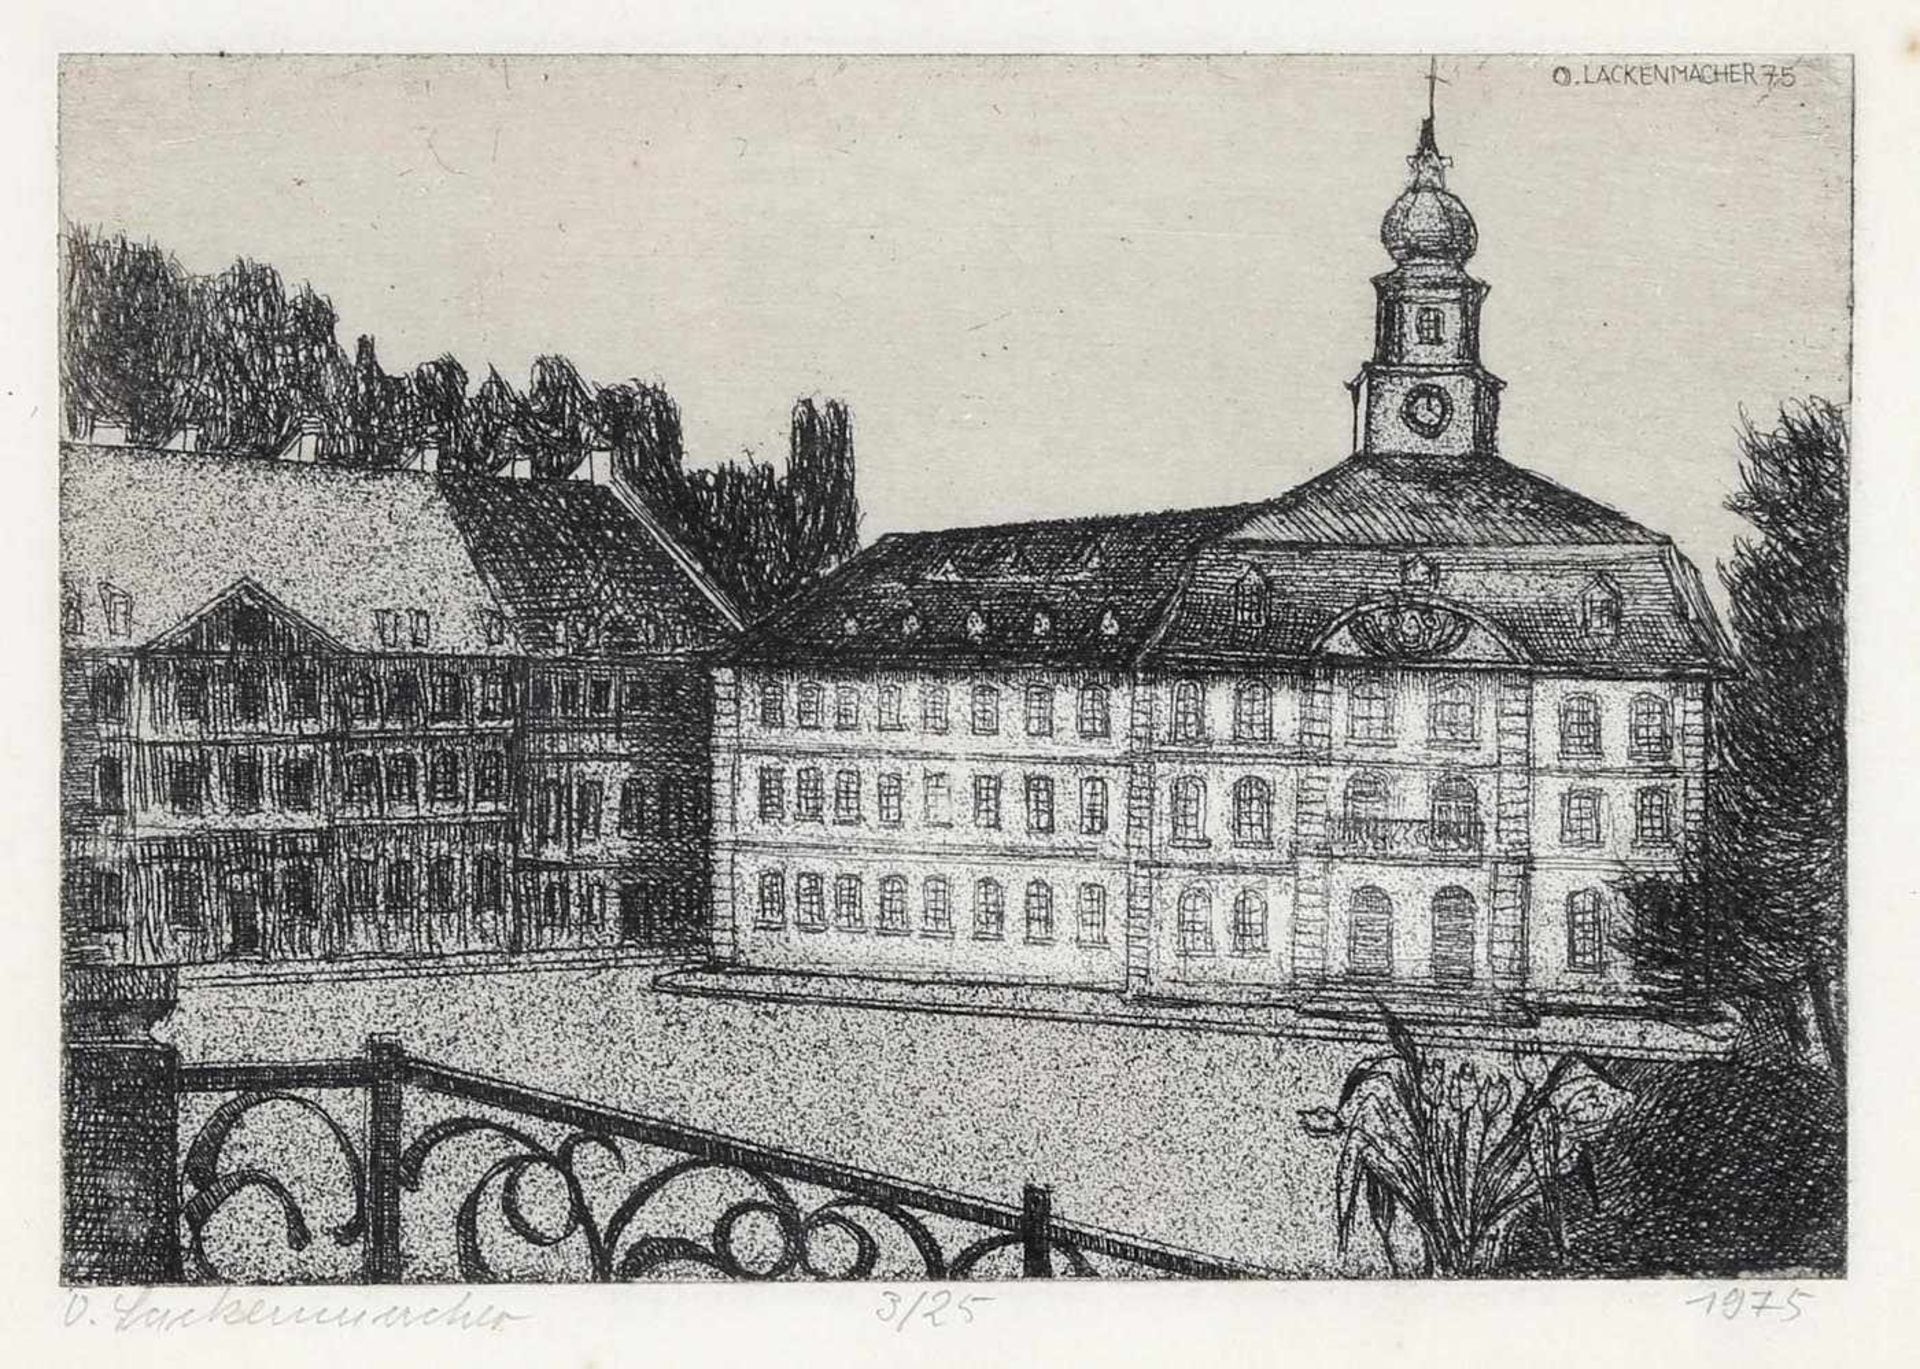 Otto Lackenmacher (Saarbrücken 1927-1988)Blick auf das Alte Rathaus in Saarbrücken, 1975, Radierung,